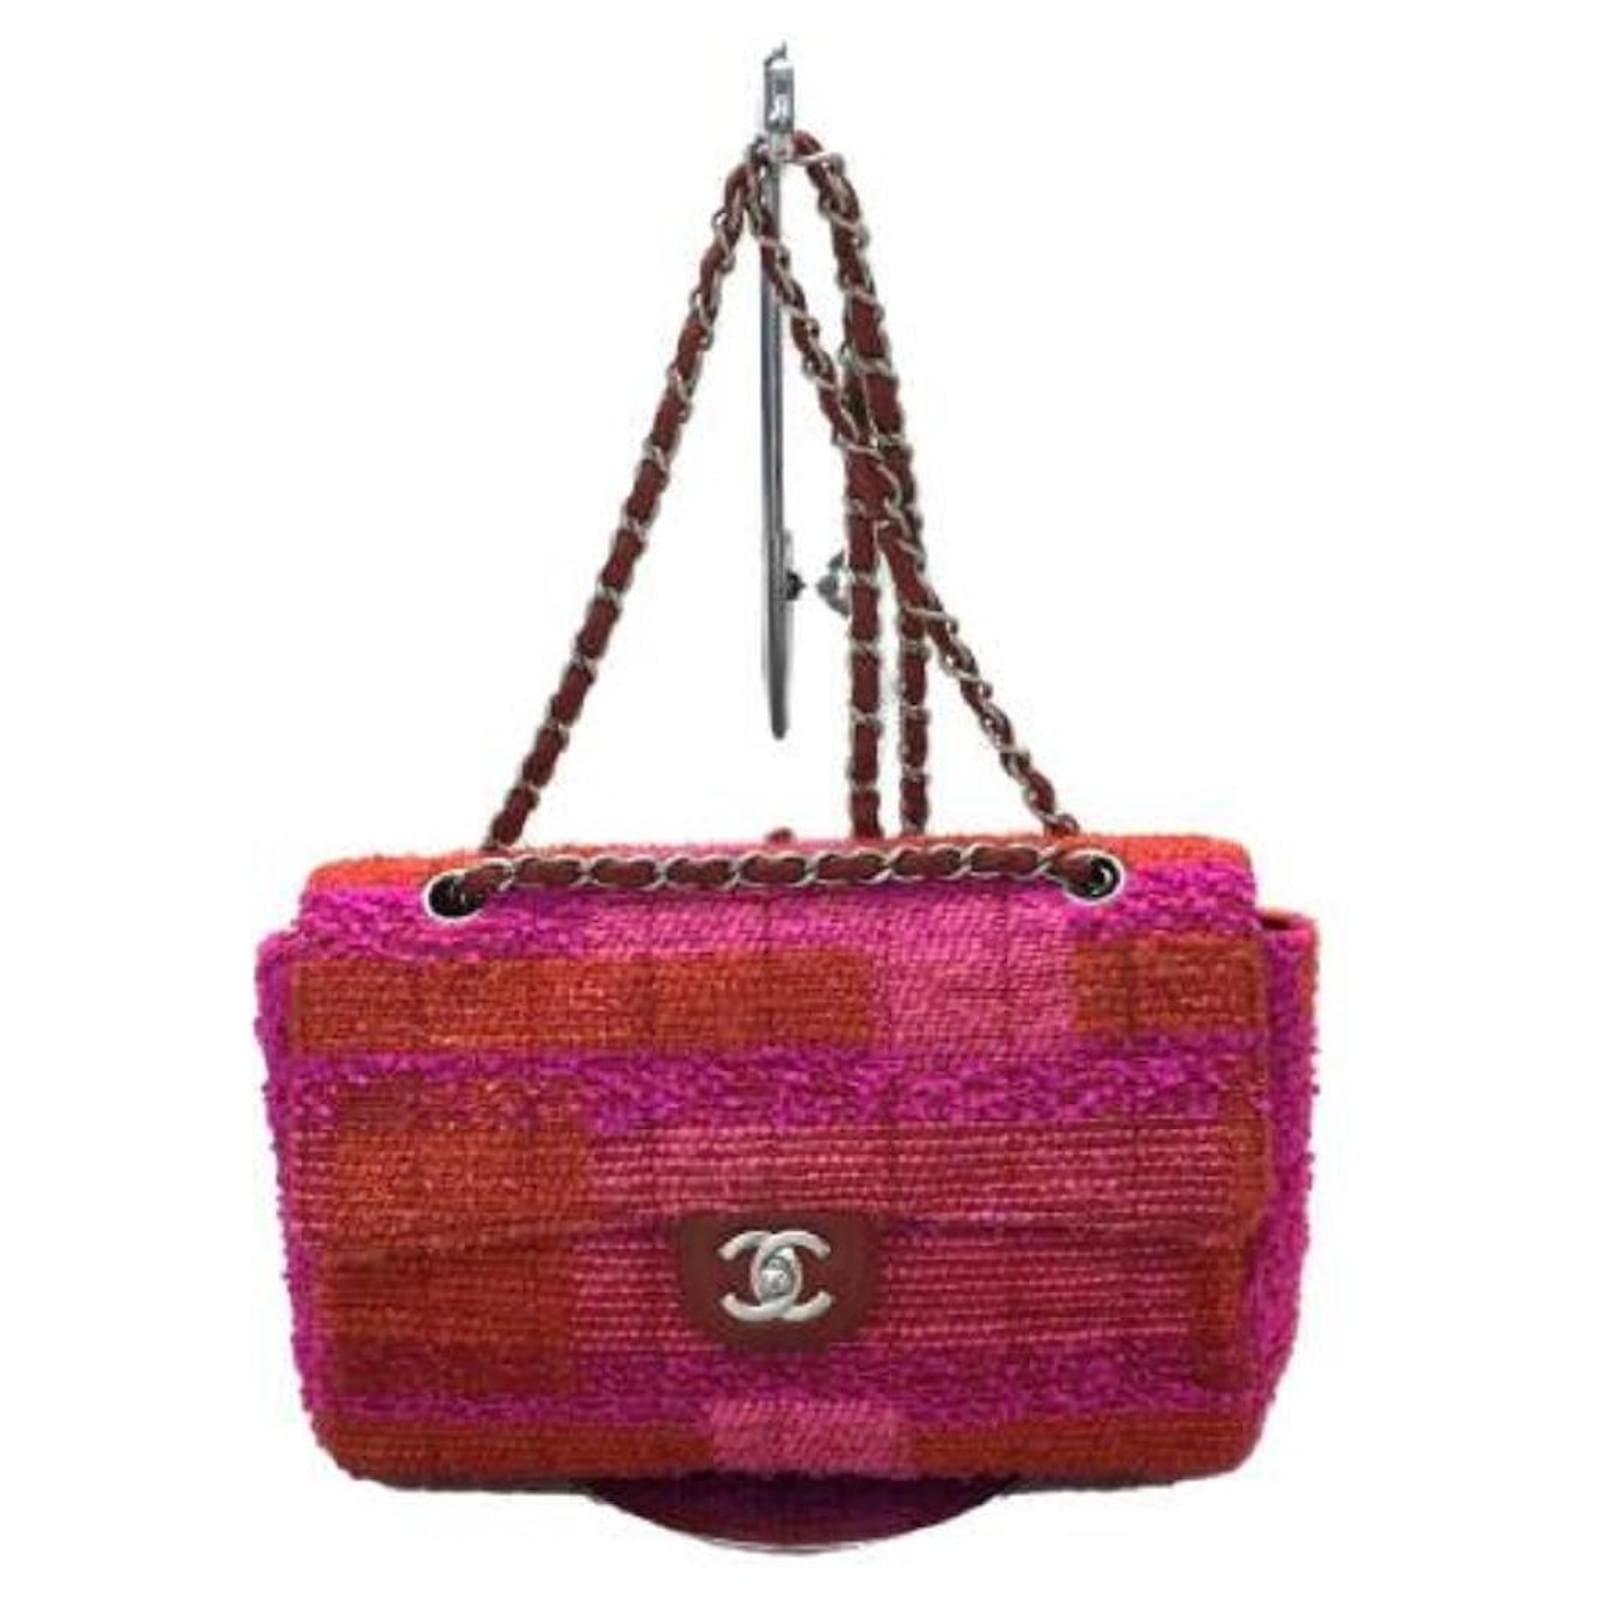 Used] CHANEL Shoulder bag / handbag / bag / tweed / red / pink